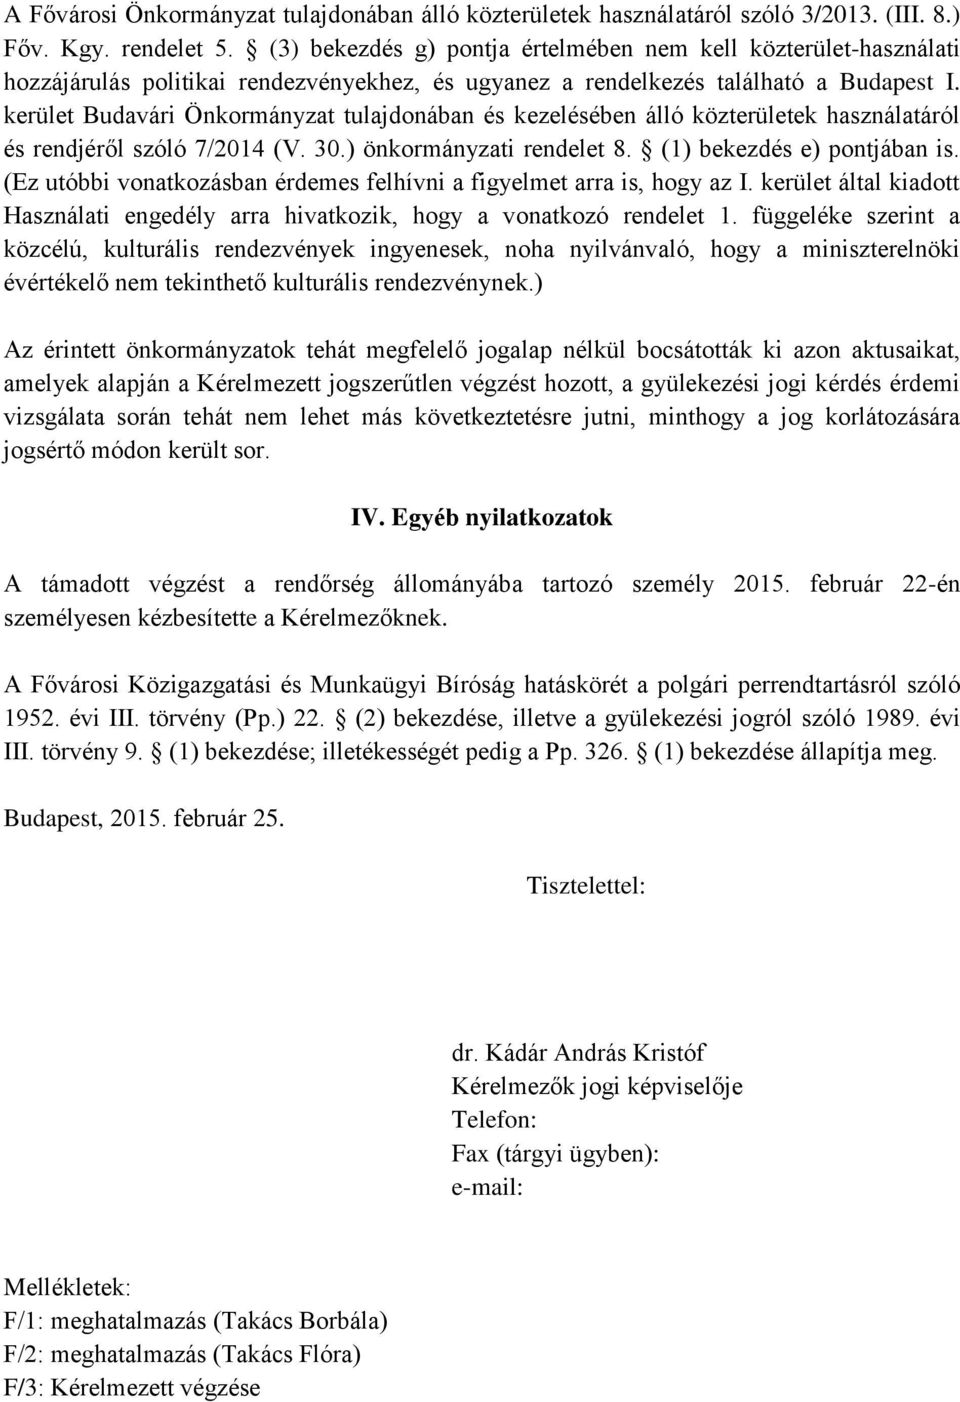 kerület Budavári Önkormányzat tulajdonában és kezelésében álló közterületek használatáról és rendjéről szóló 7/2014 (V. 30.) önkormányzati rendelet 8. (1) bekezdés e) pontjában is.